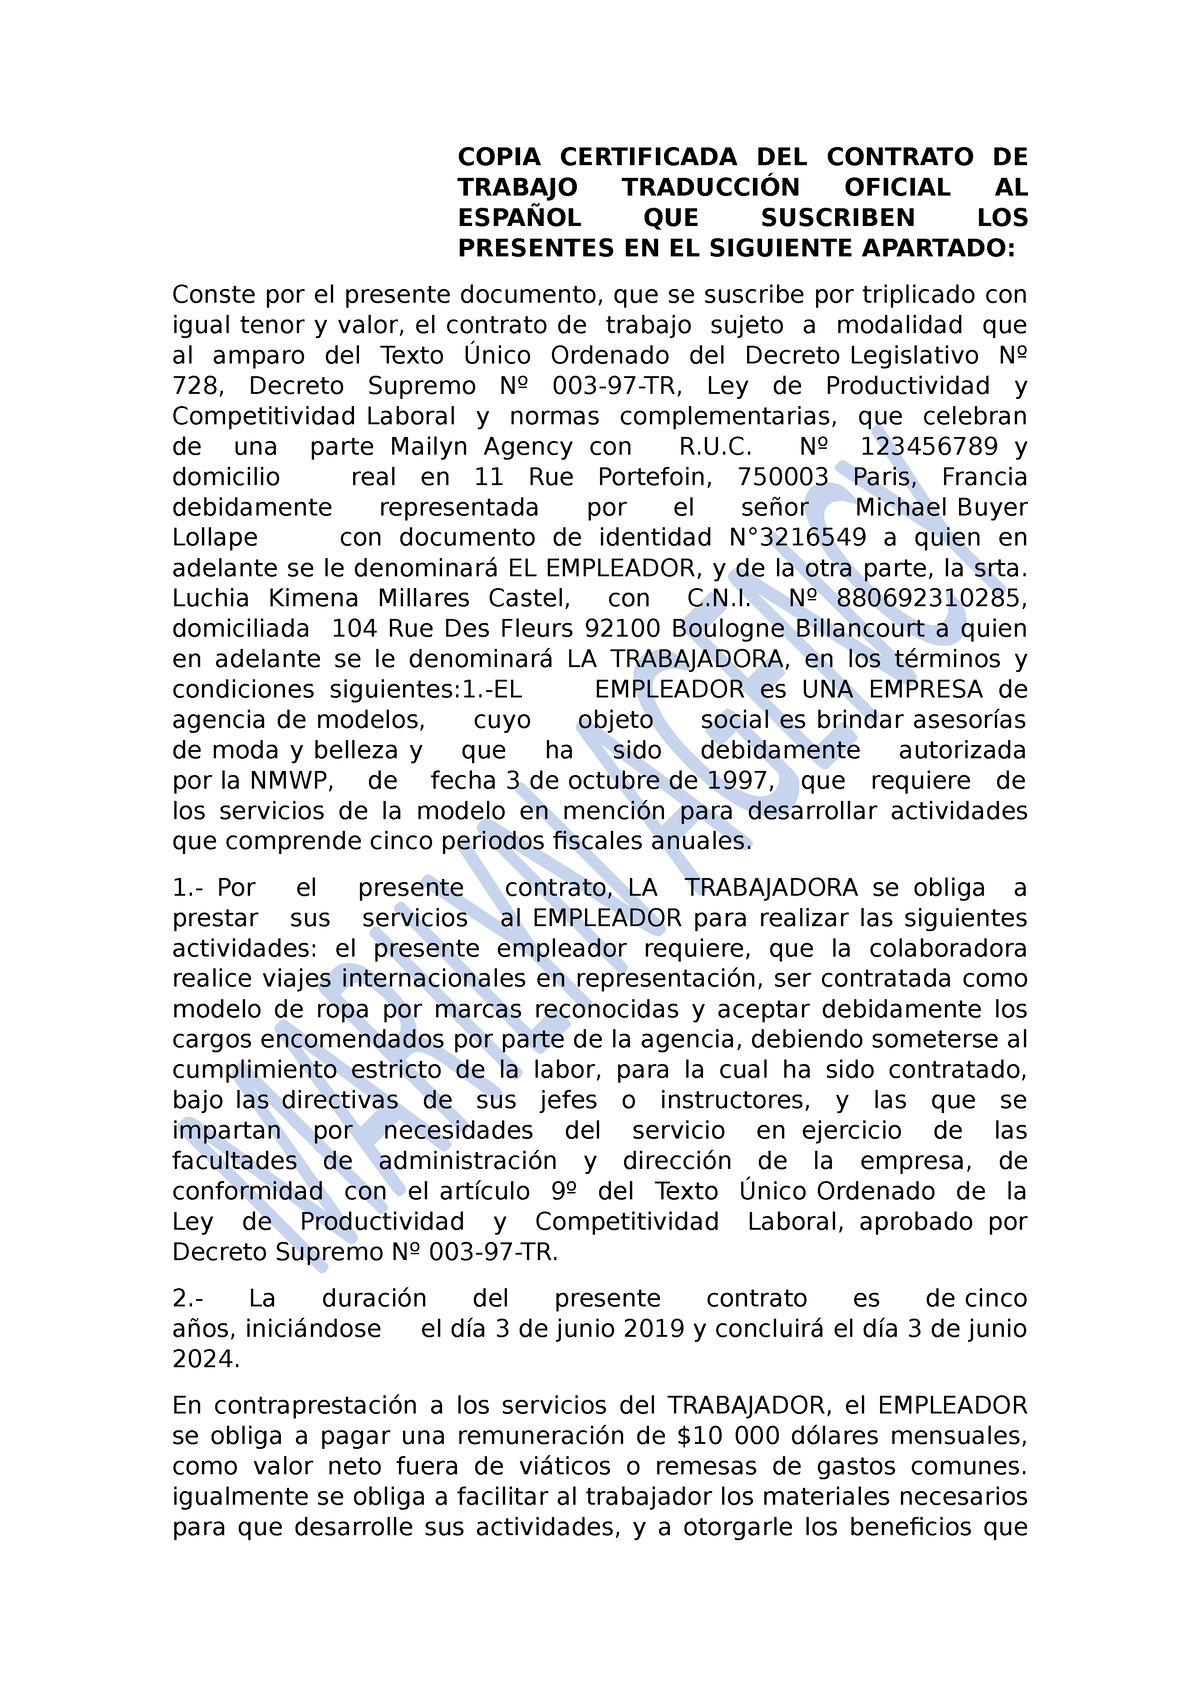 Contrato Modelaje Copia Certificada Del Contrato De Trabajo TraducciÓn Oficial Al EspaÑol Que 7639